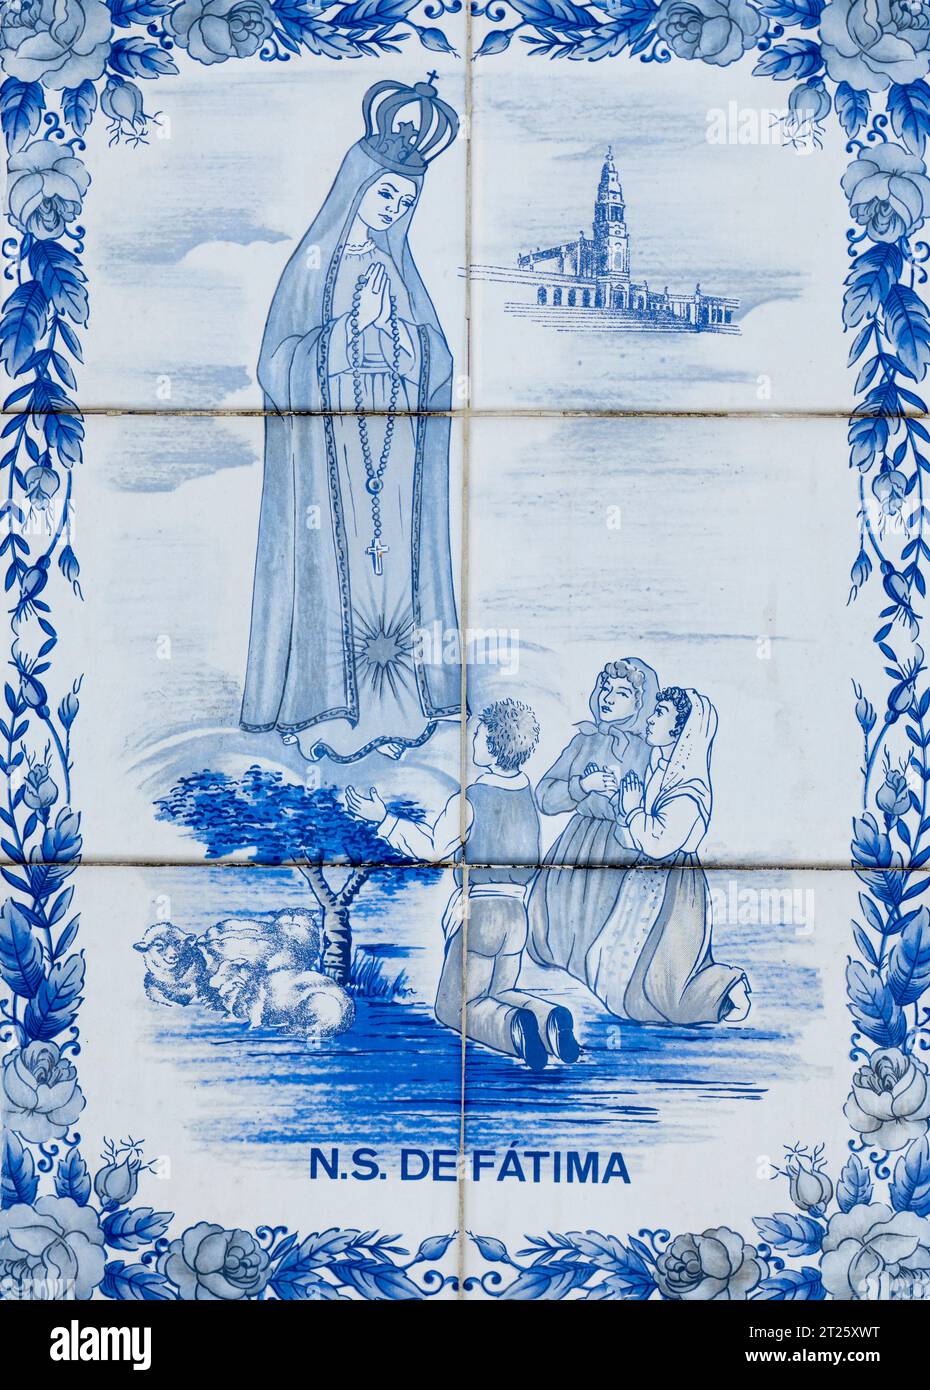 Nossa Senhora de Fátima, notre dame de Fatima (1917 apparition de la Vierge Marie à Fatima, Portugal) Art religieux chrétien en céramique peinte à la main t Banque D'Images